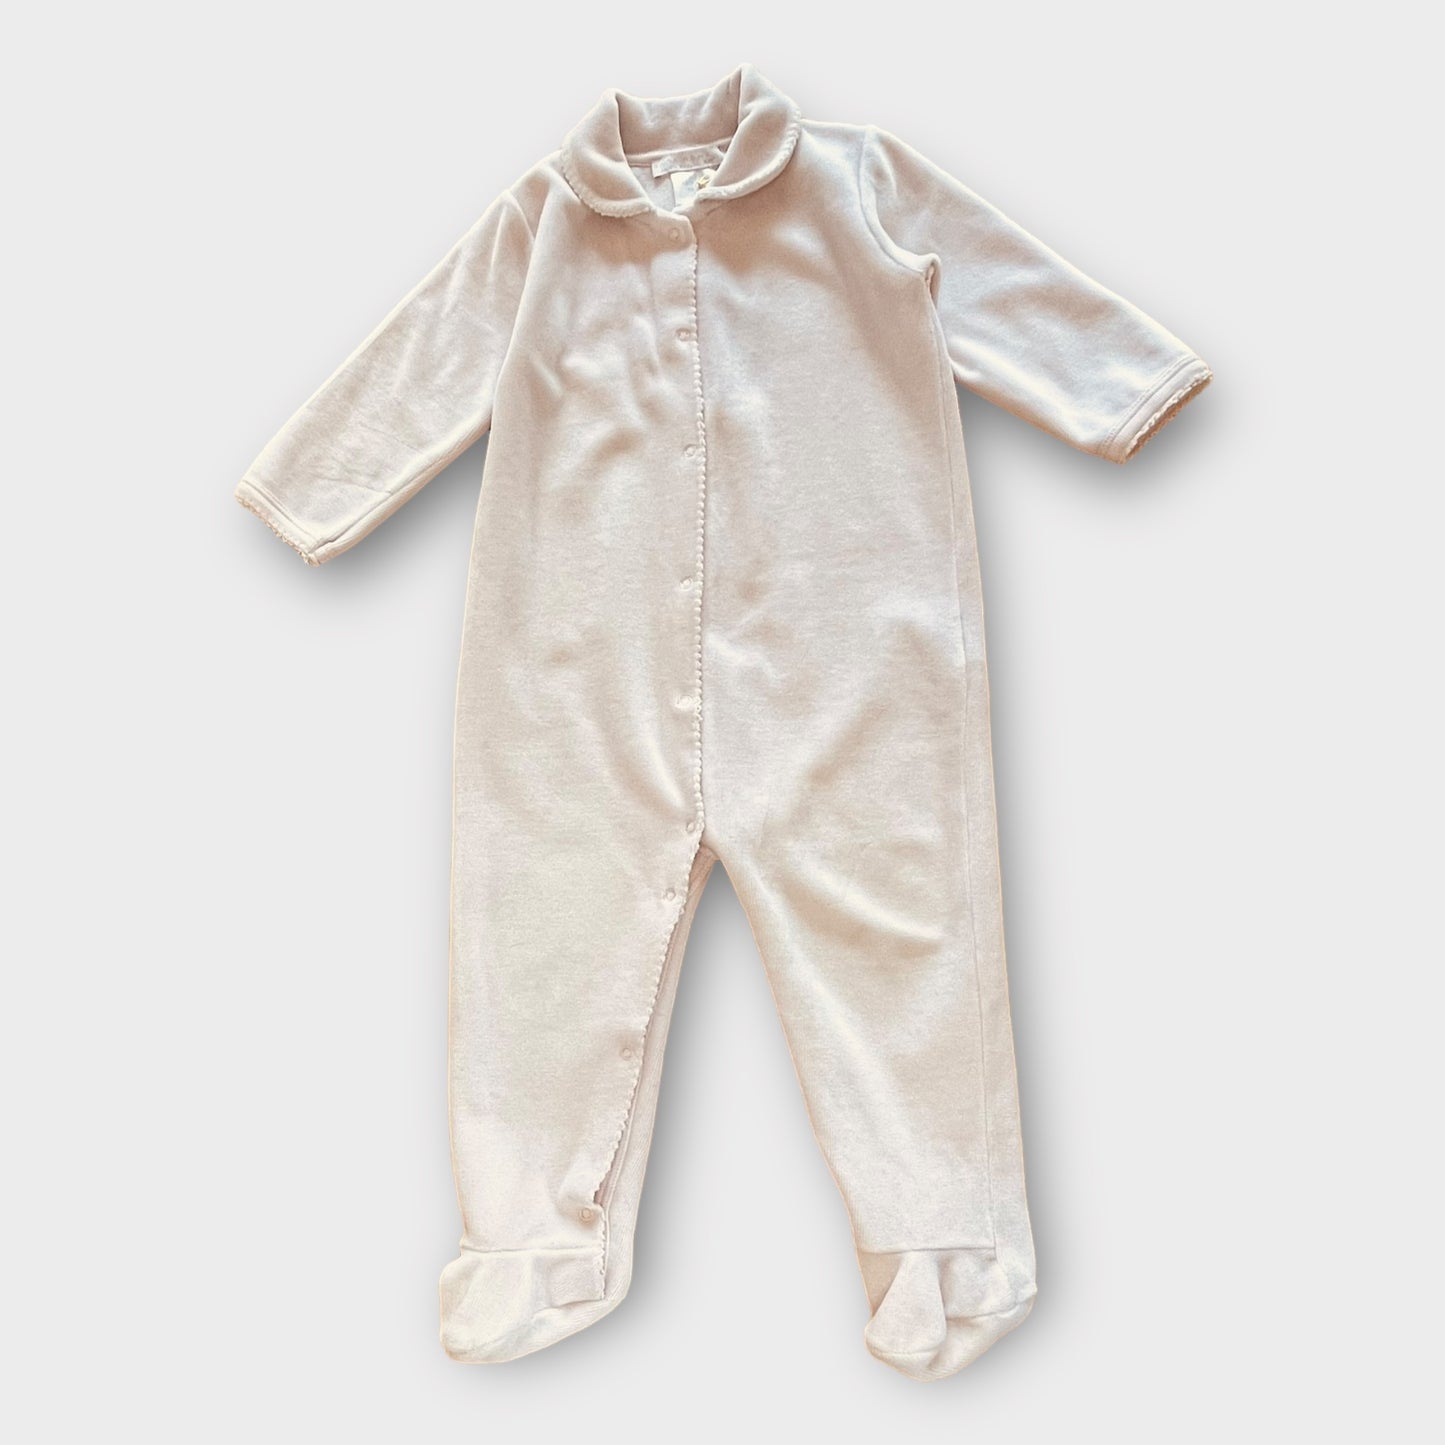 Zara Home - pajamas - 6 - 12 months